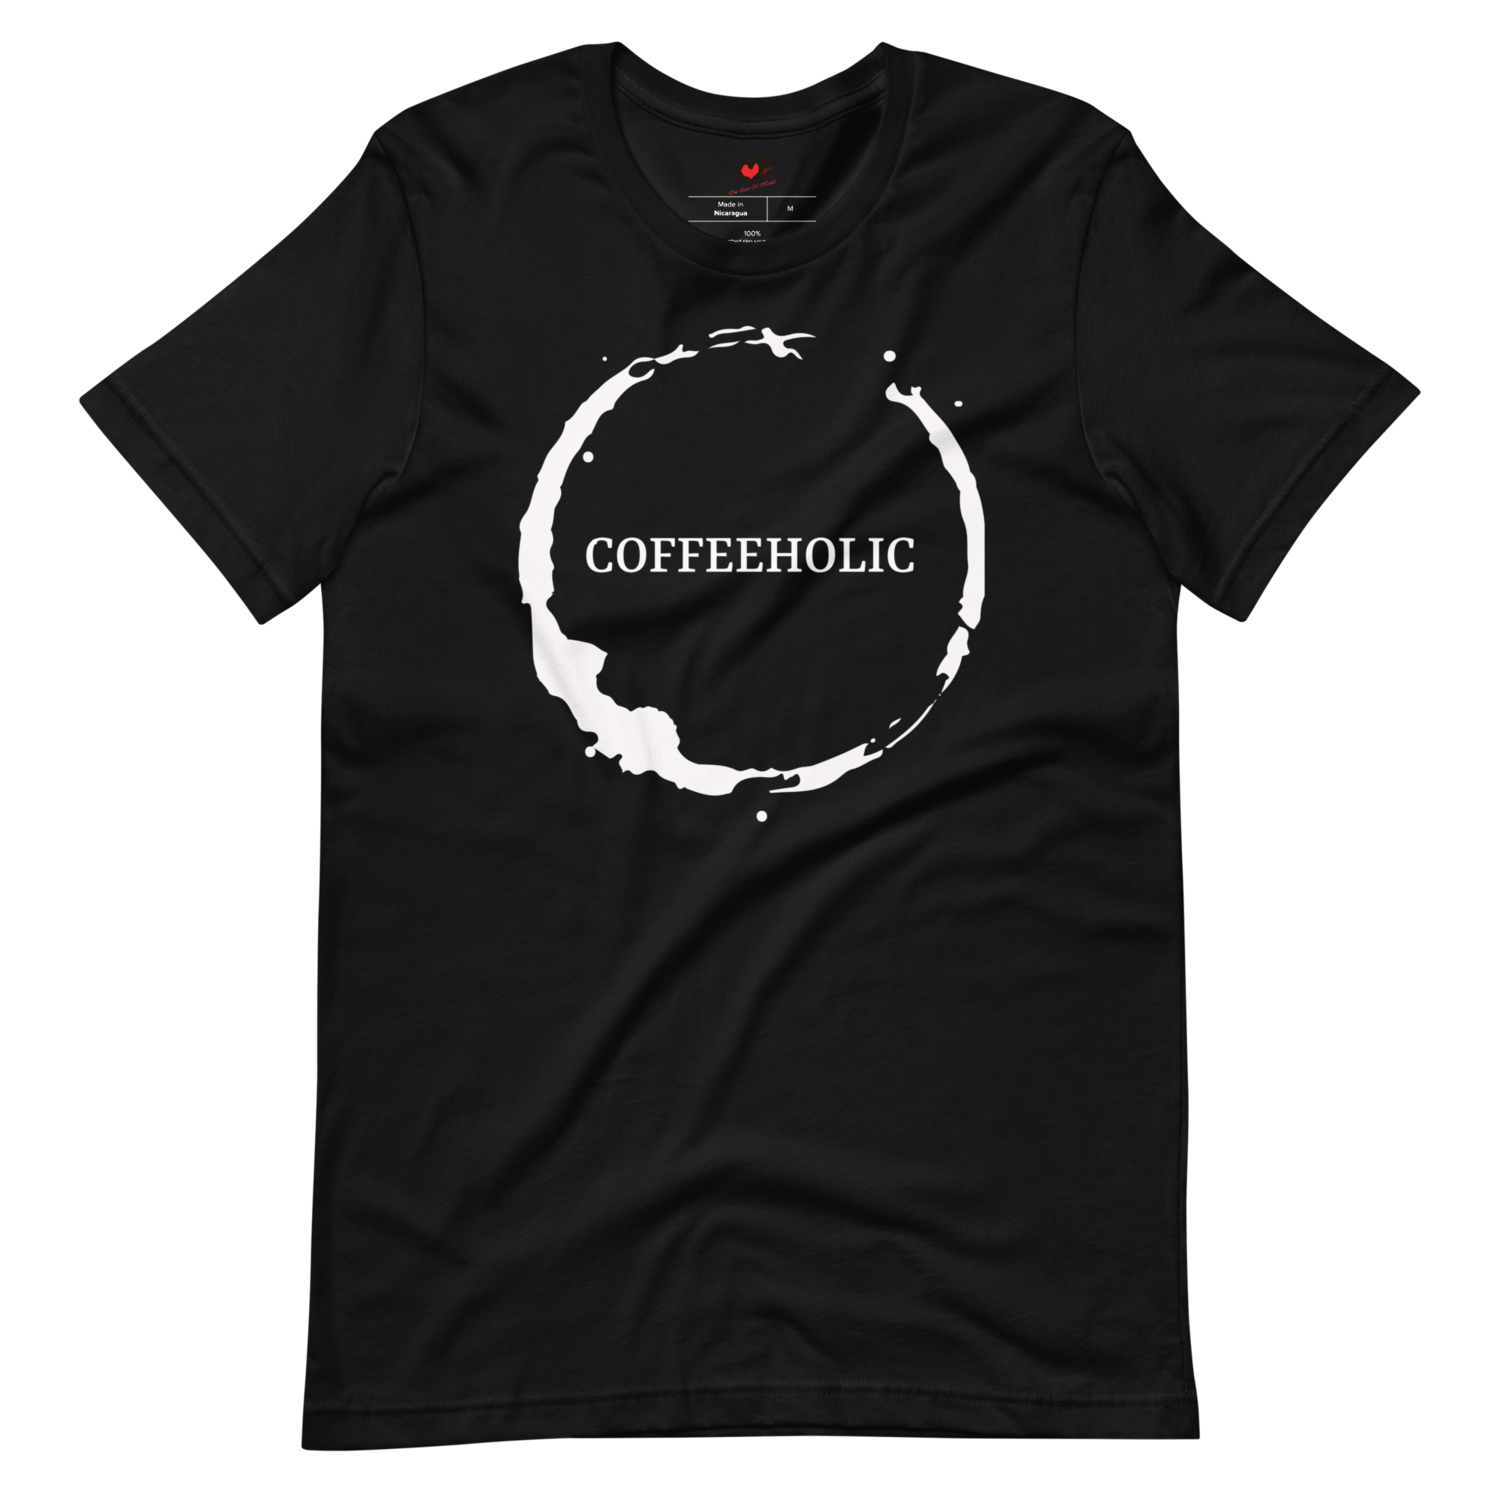 "Coffeeholic" Unisex Short-sleeved t-shirt